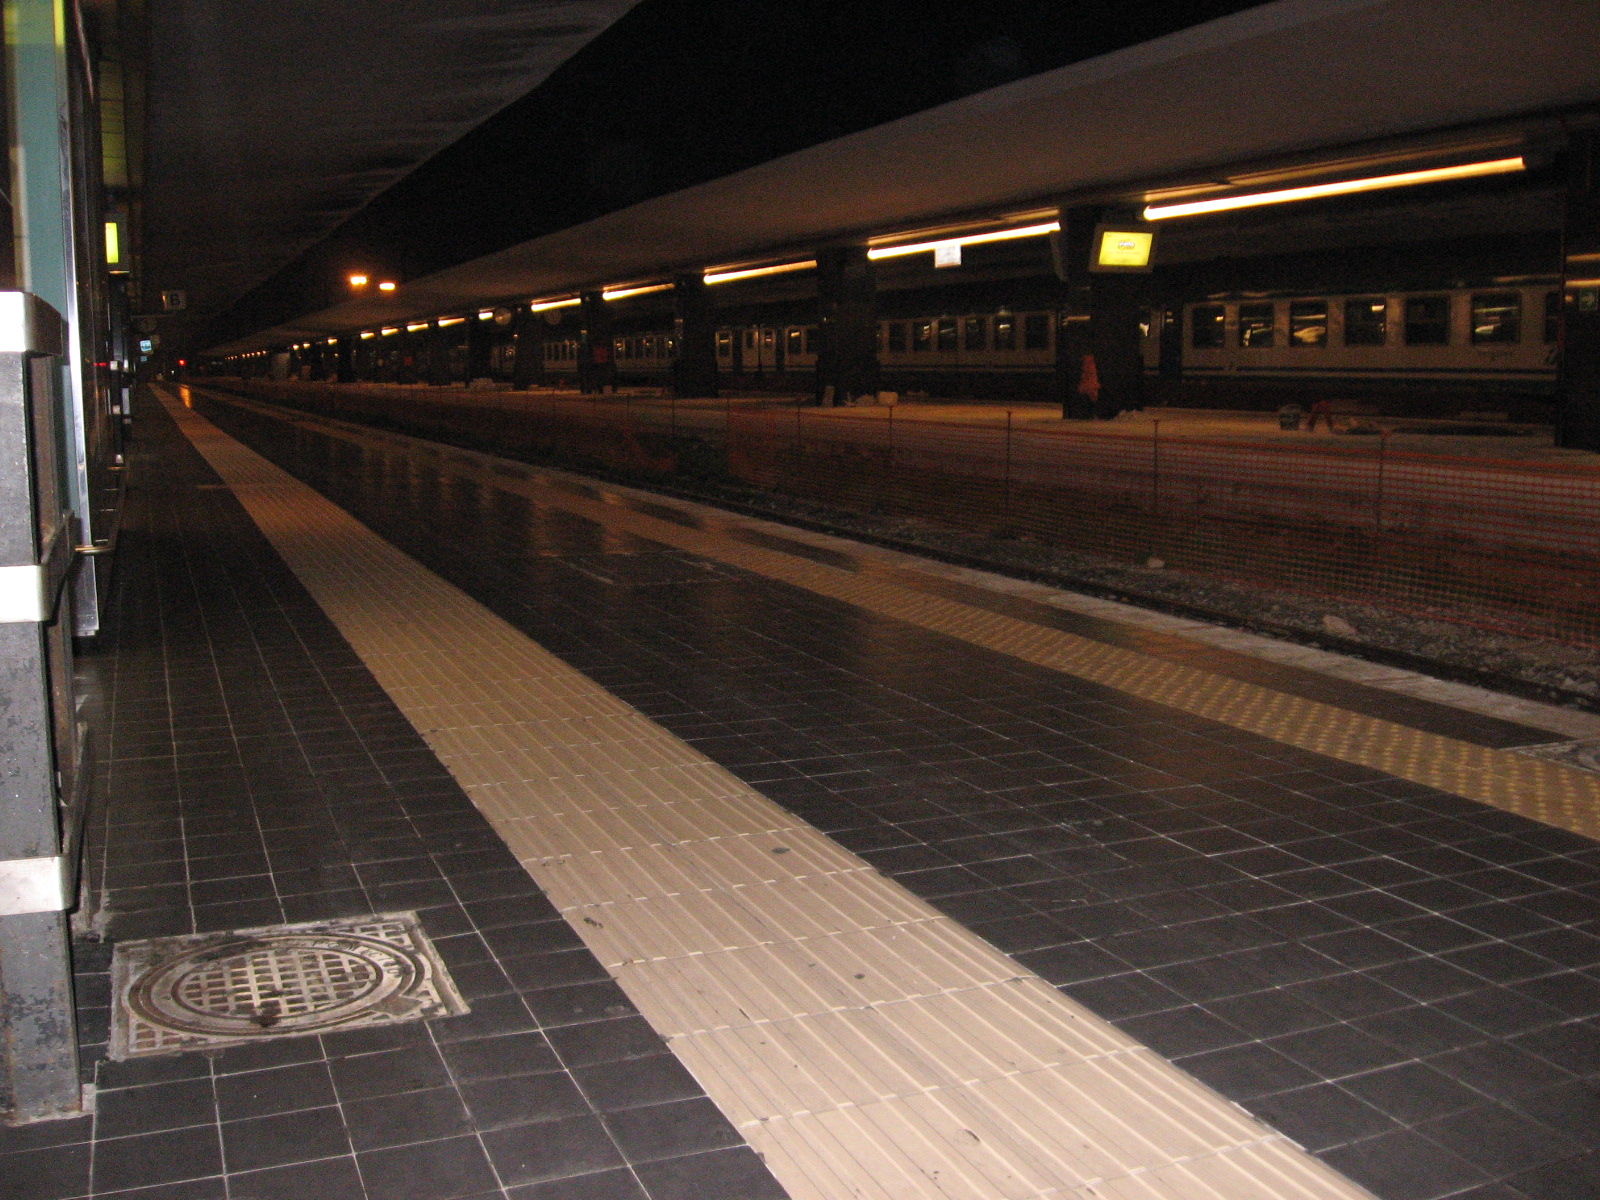 deserted train station